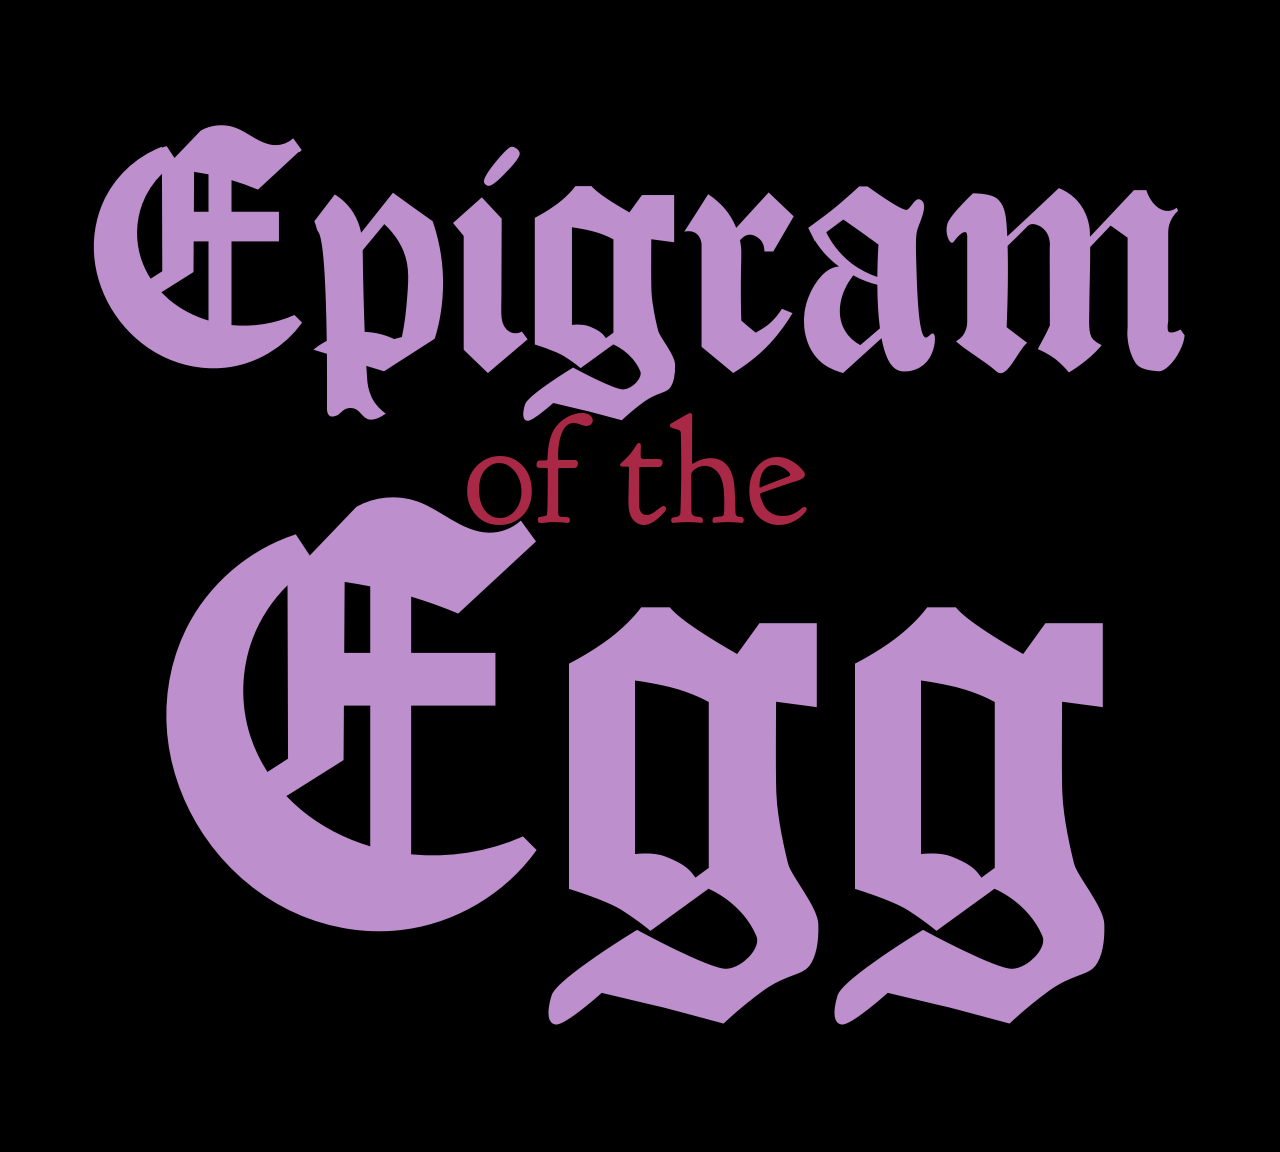 Epigram of the Egg